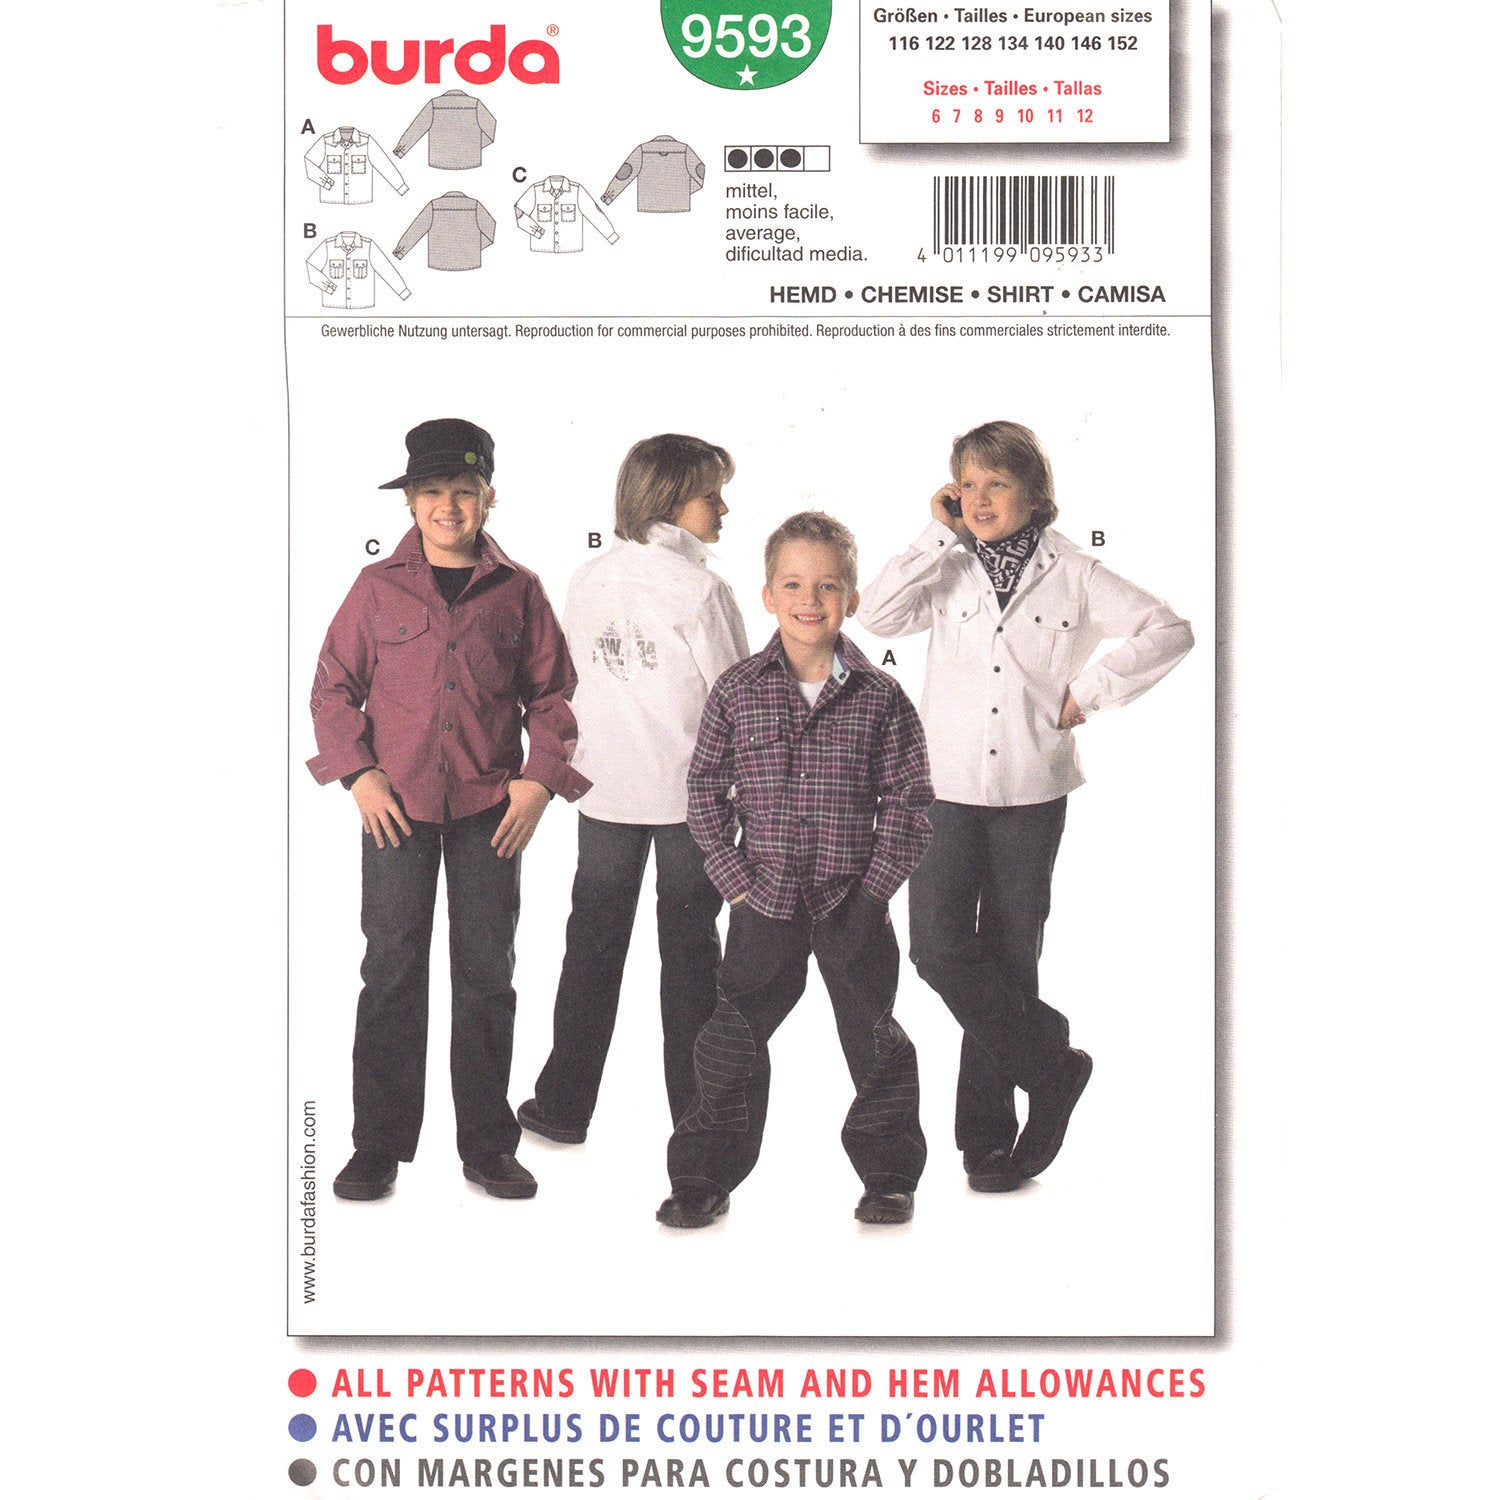 Burda 9593 boys shirt pattern